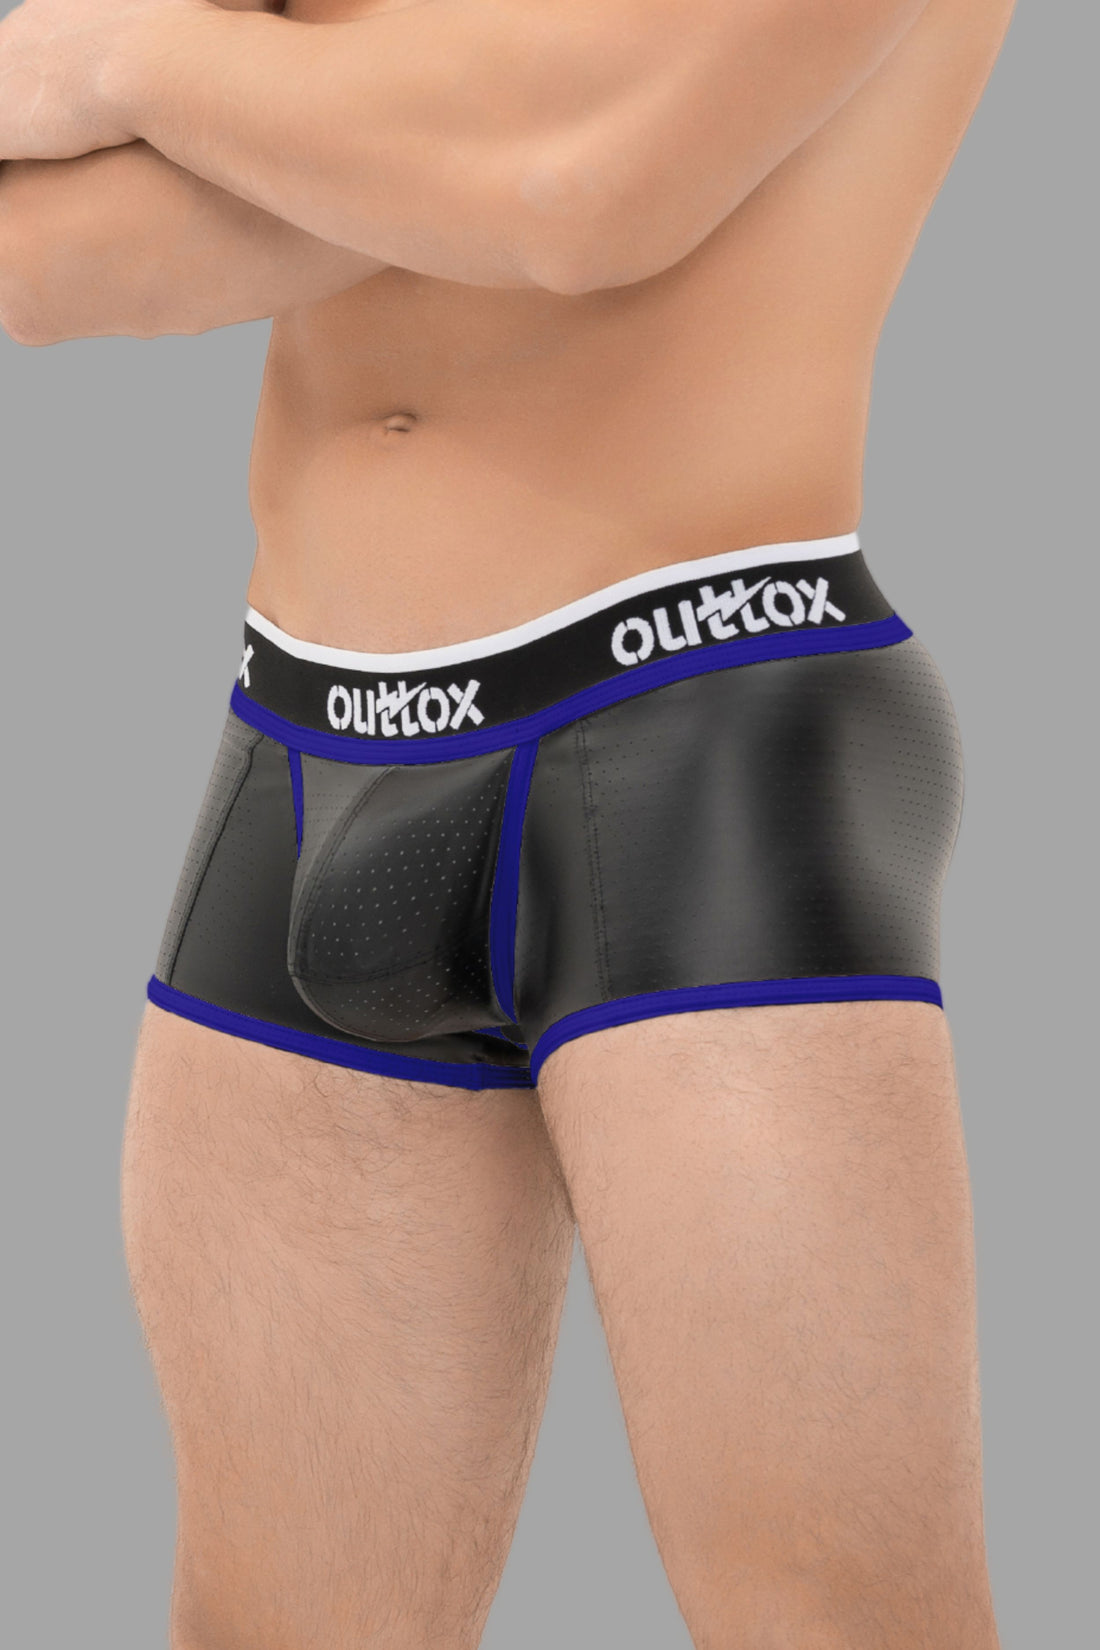 Outtox. Shorts mit offenem Rücken und Druckknopf-Codpiece. Schwarz+Blau „Royal“